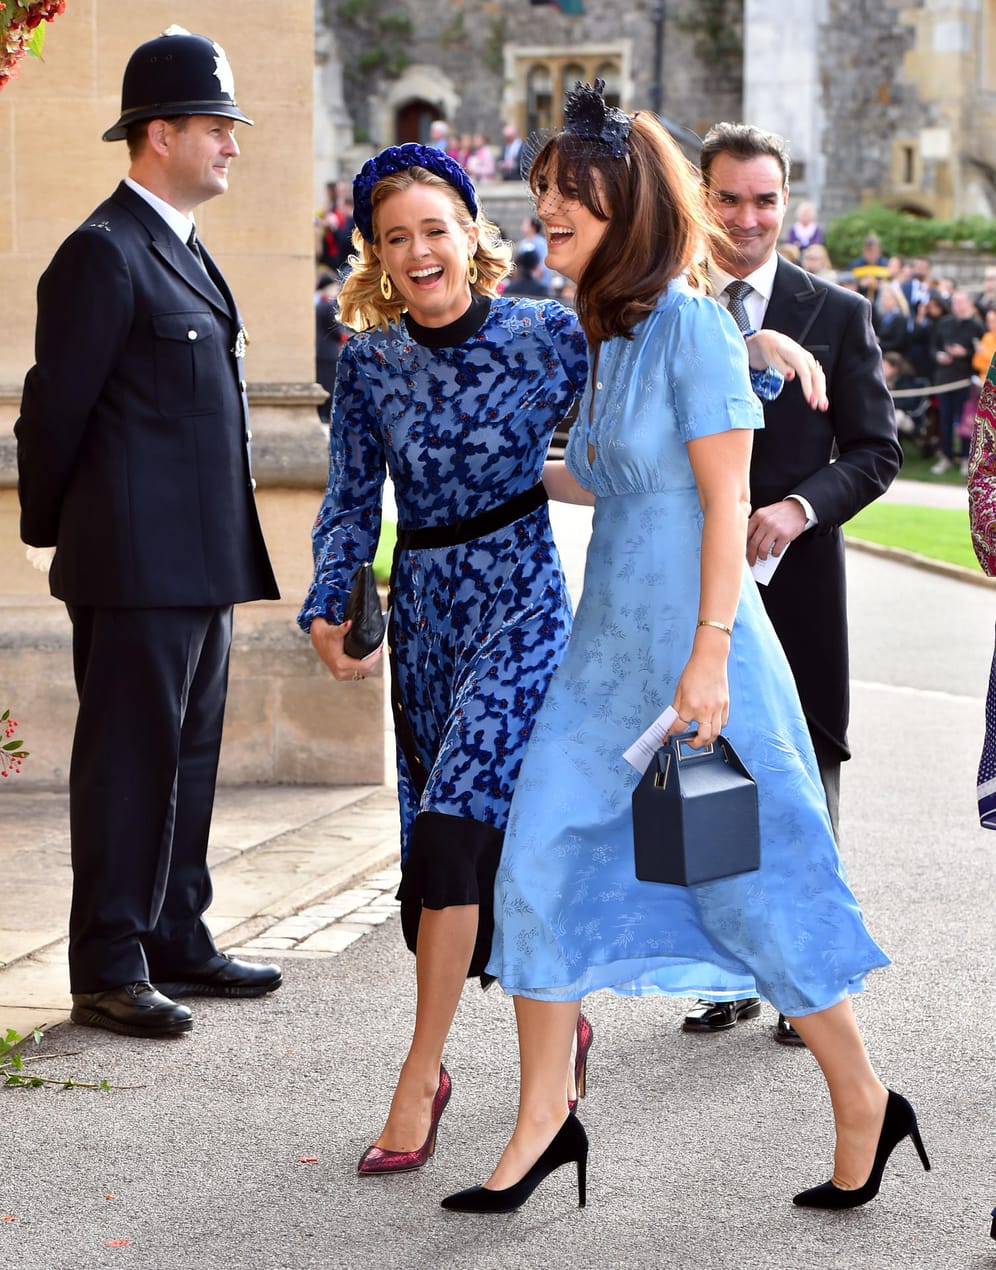 Genauso wie Cressida Bonas (links), die ebenfalls eine Ex-Freundin von Prinz Harry ist.